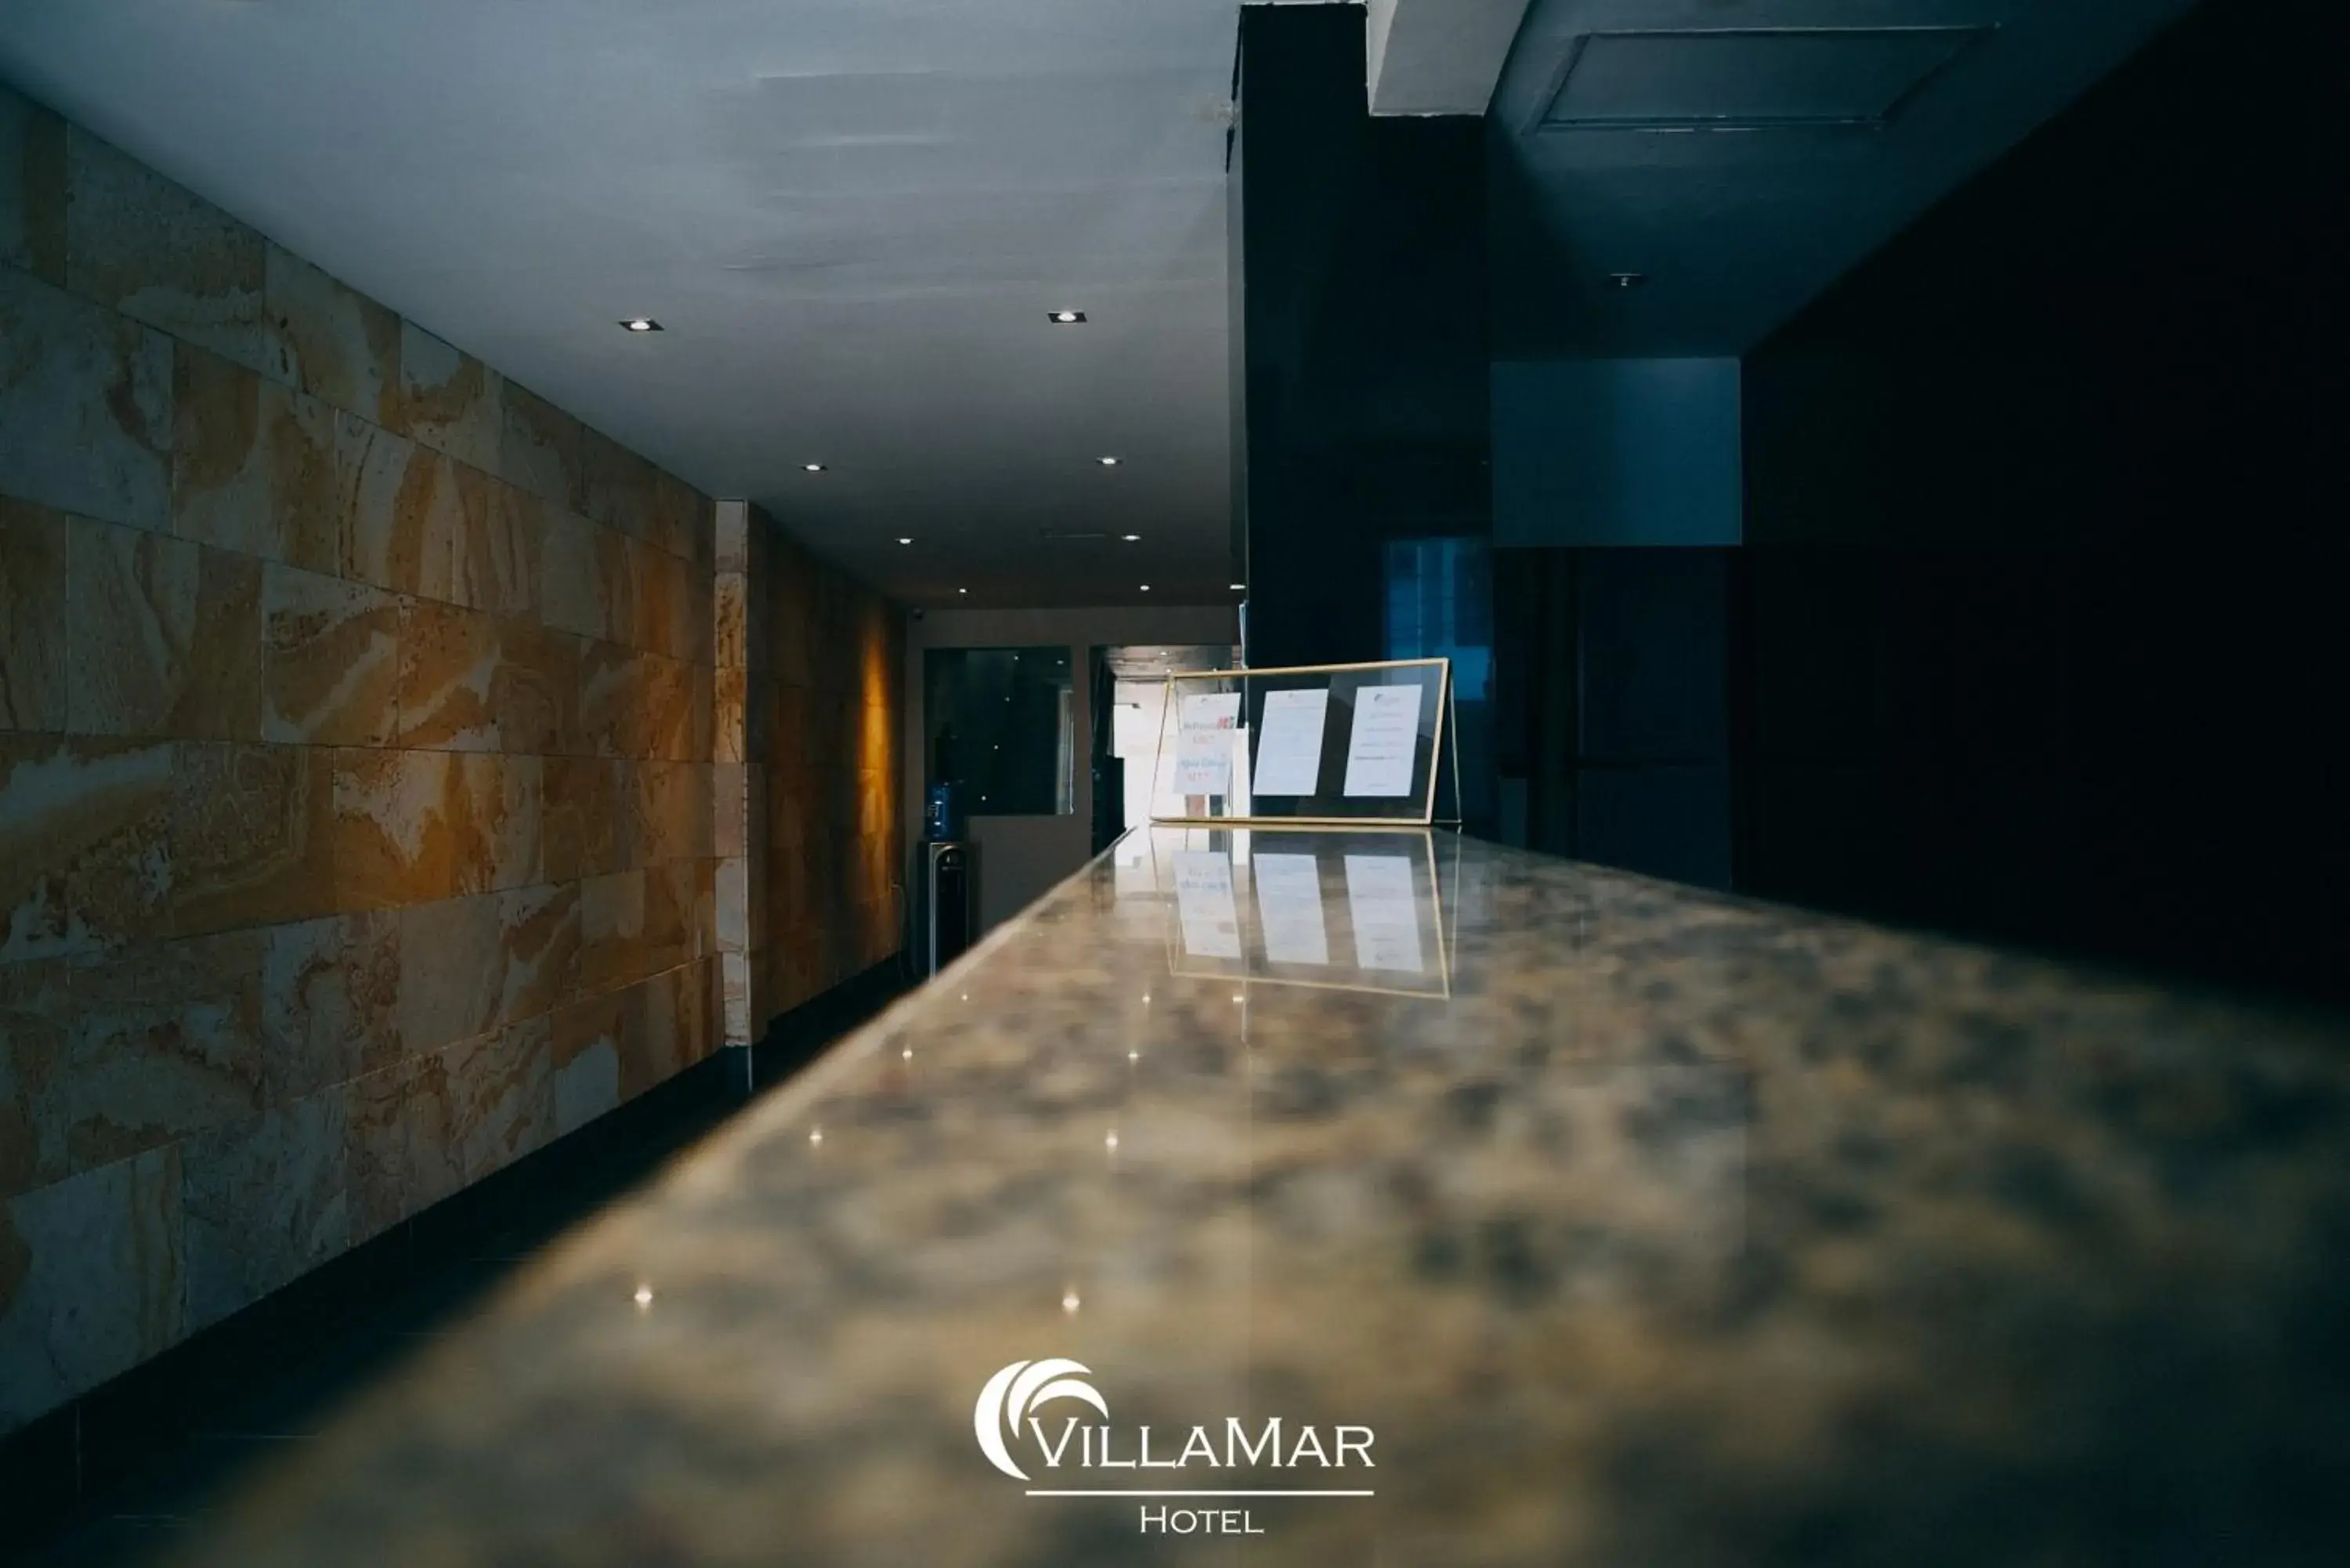 Lobby or reception in Hotel Villamar